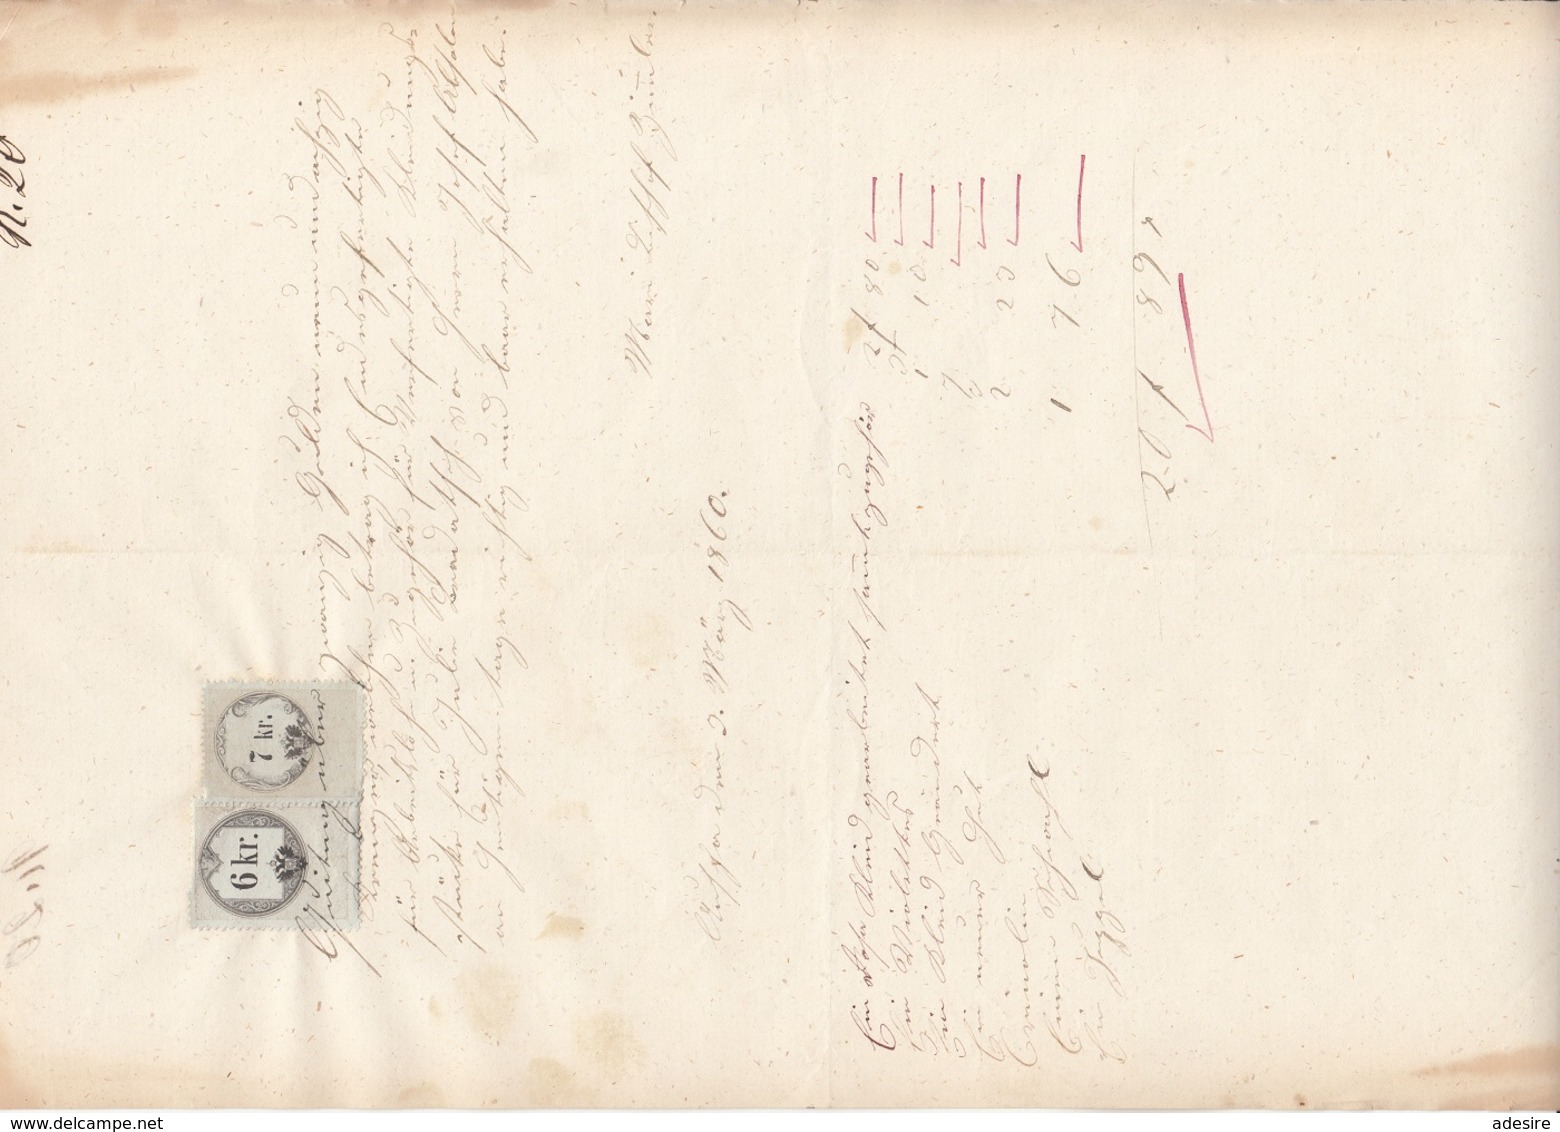 QUITTUNG 1860 - Handgeschrieben Rechnung Mit 6 + 7 Kreuzer Stempelmarke, A3 Format, Gefaltet, Gebrauchsspuren - Autriche